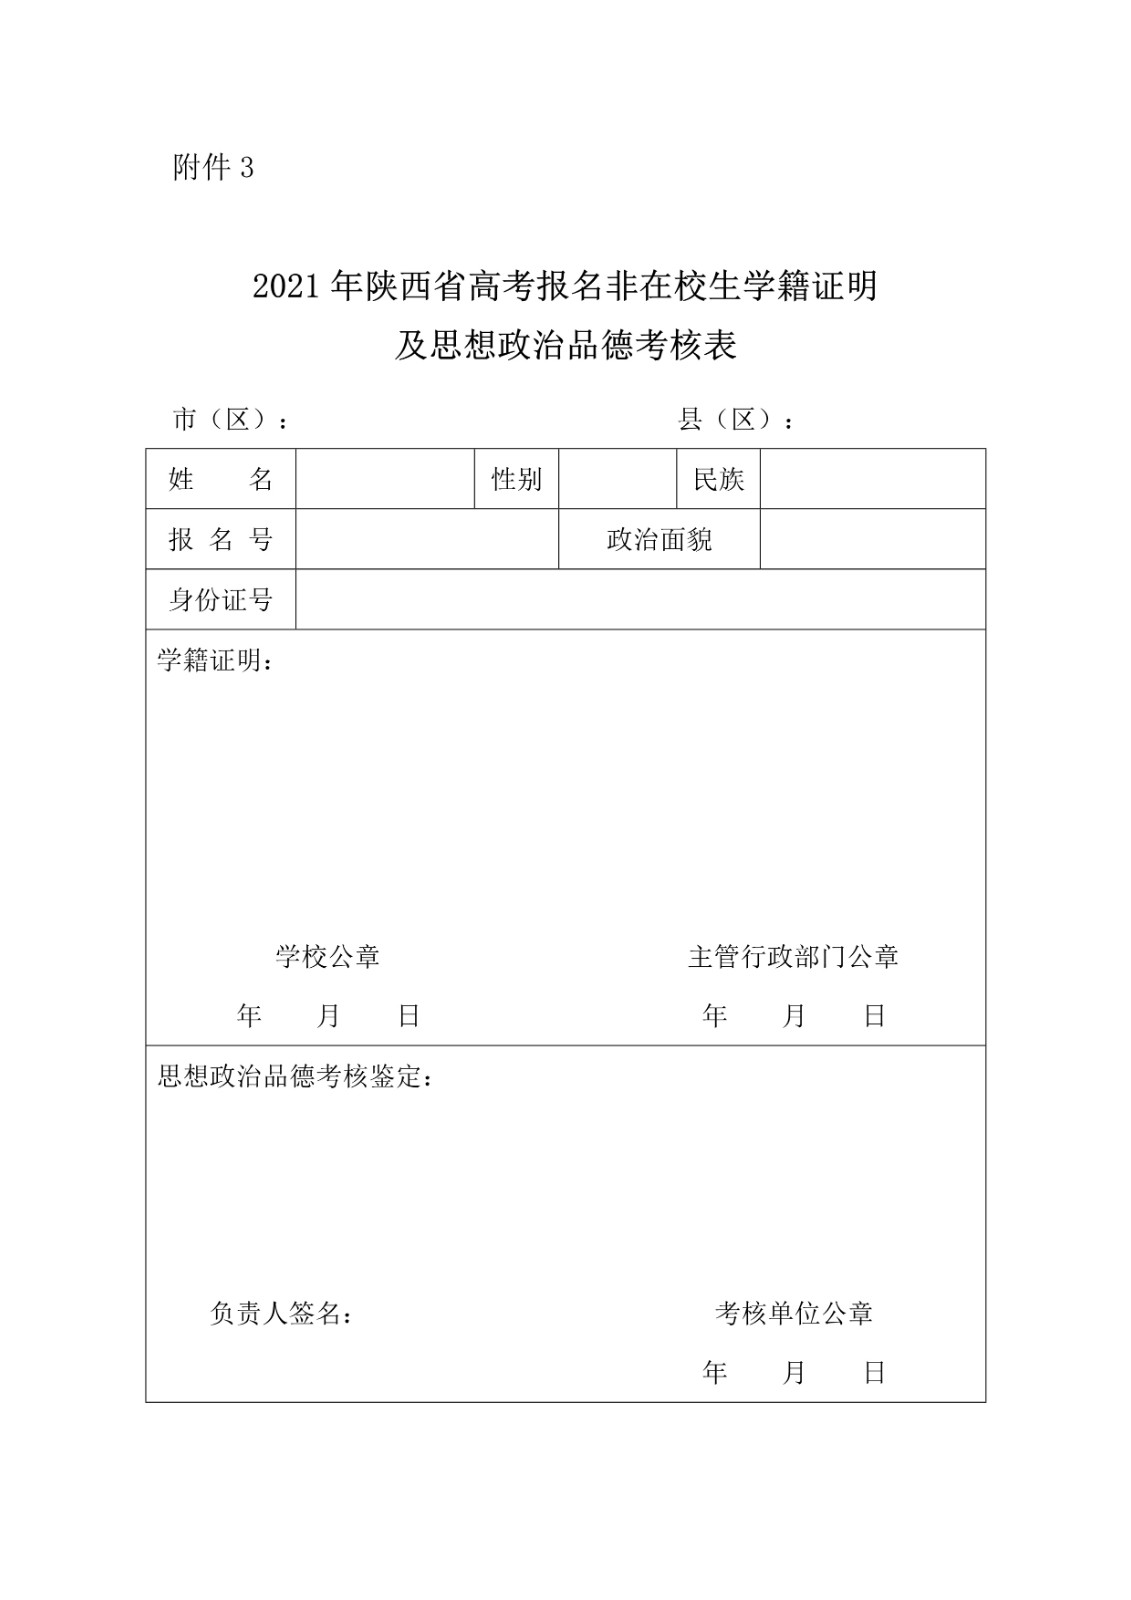 陕西省教育考试院 陕西省招生委员会办公室关于做好2021年普通高等学校招生考试报名工作的通知